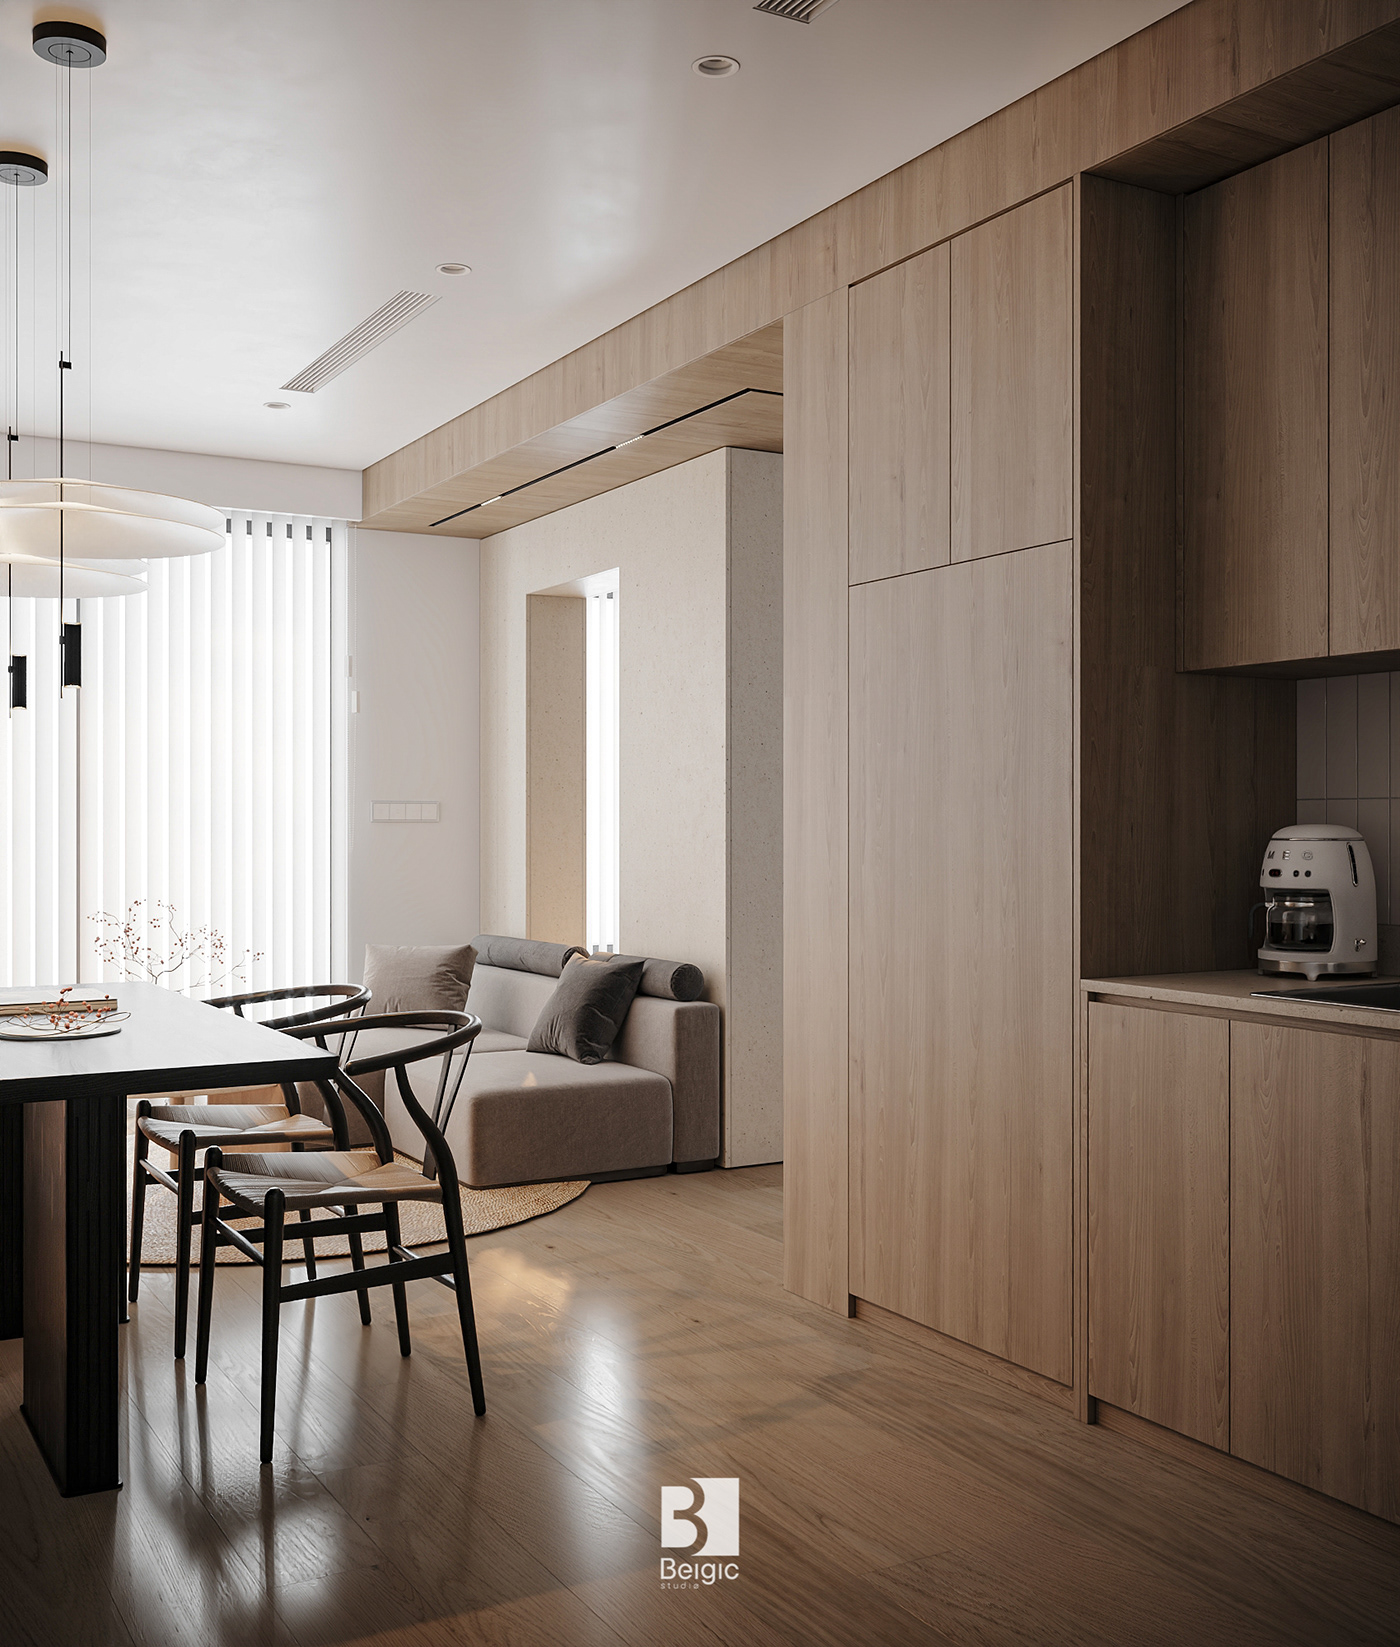 3ds max apartment architecture design designer Interior interior design  living room Render visualization